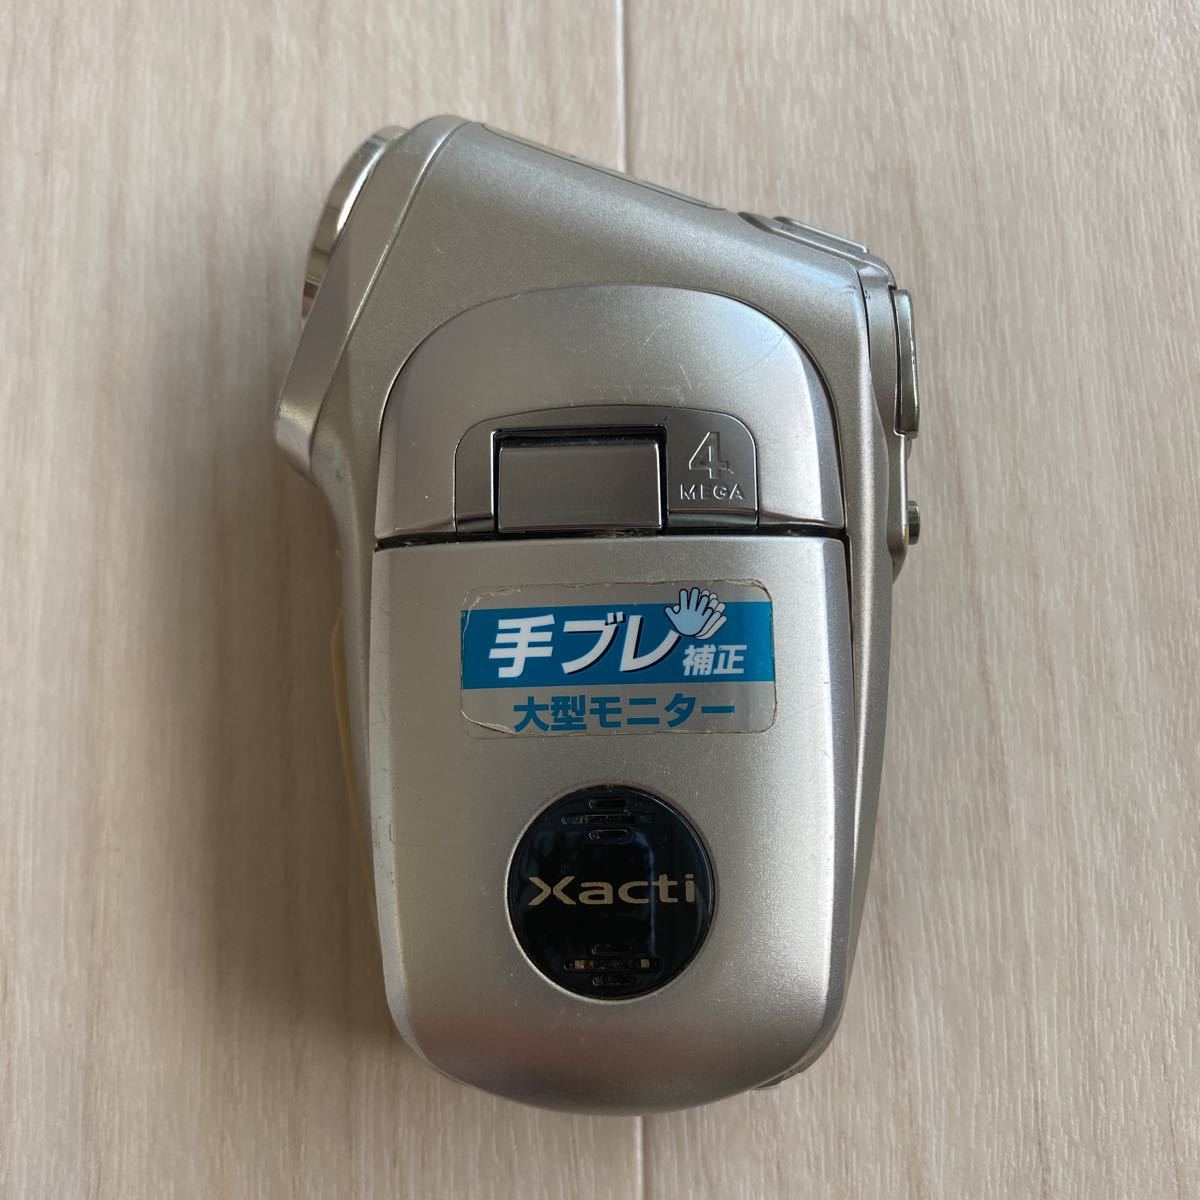 SANYO Xacti DMX-C4 サンヨー ザクティ デジタルムービーカメラ D1643